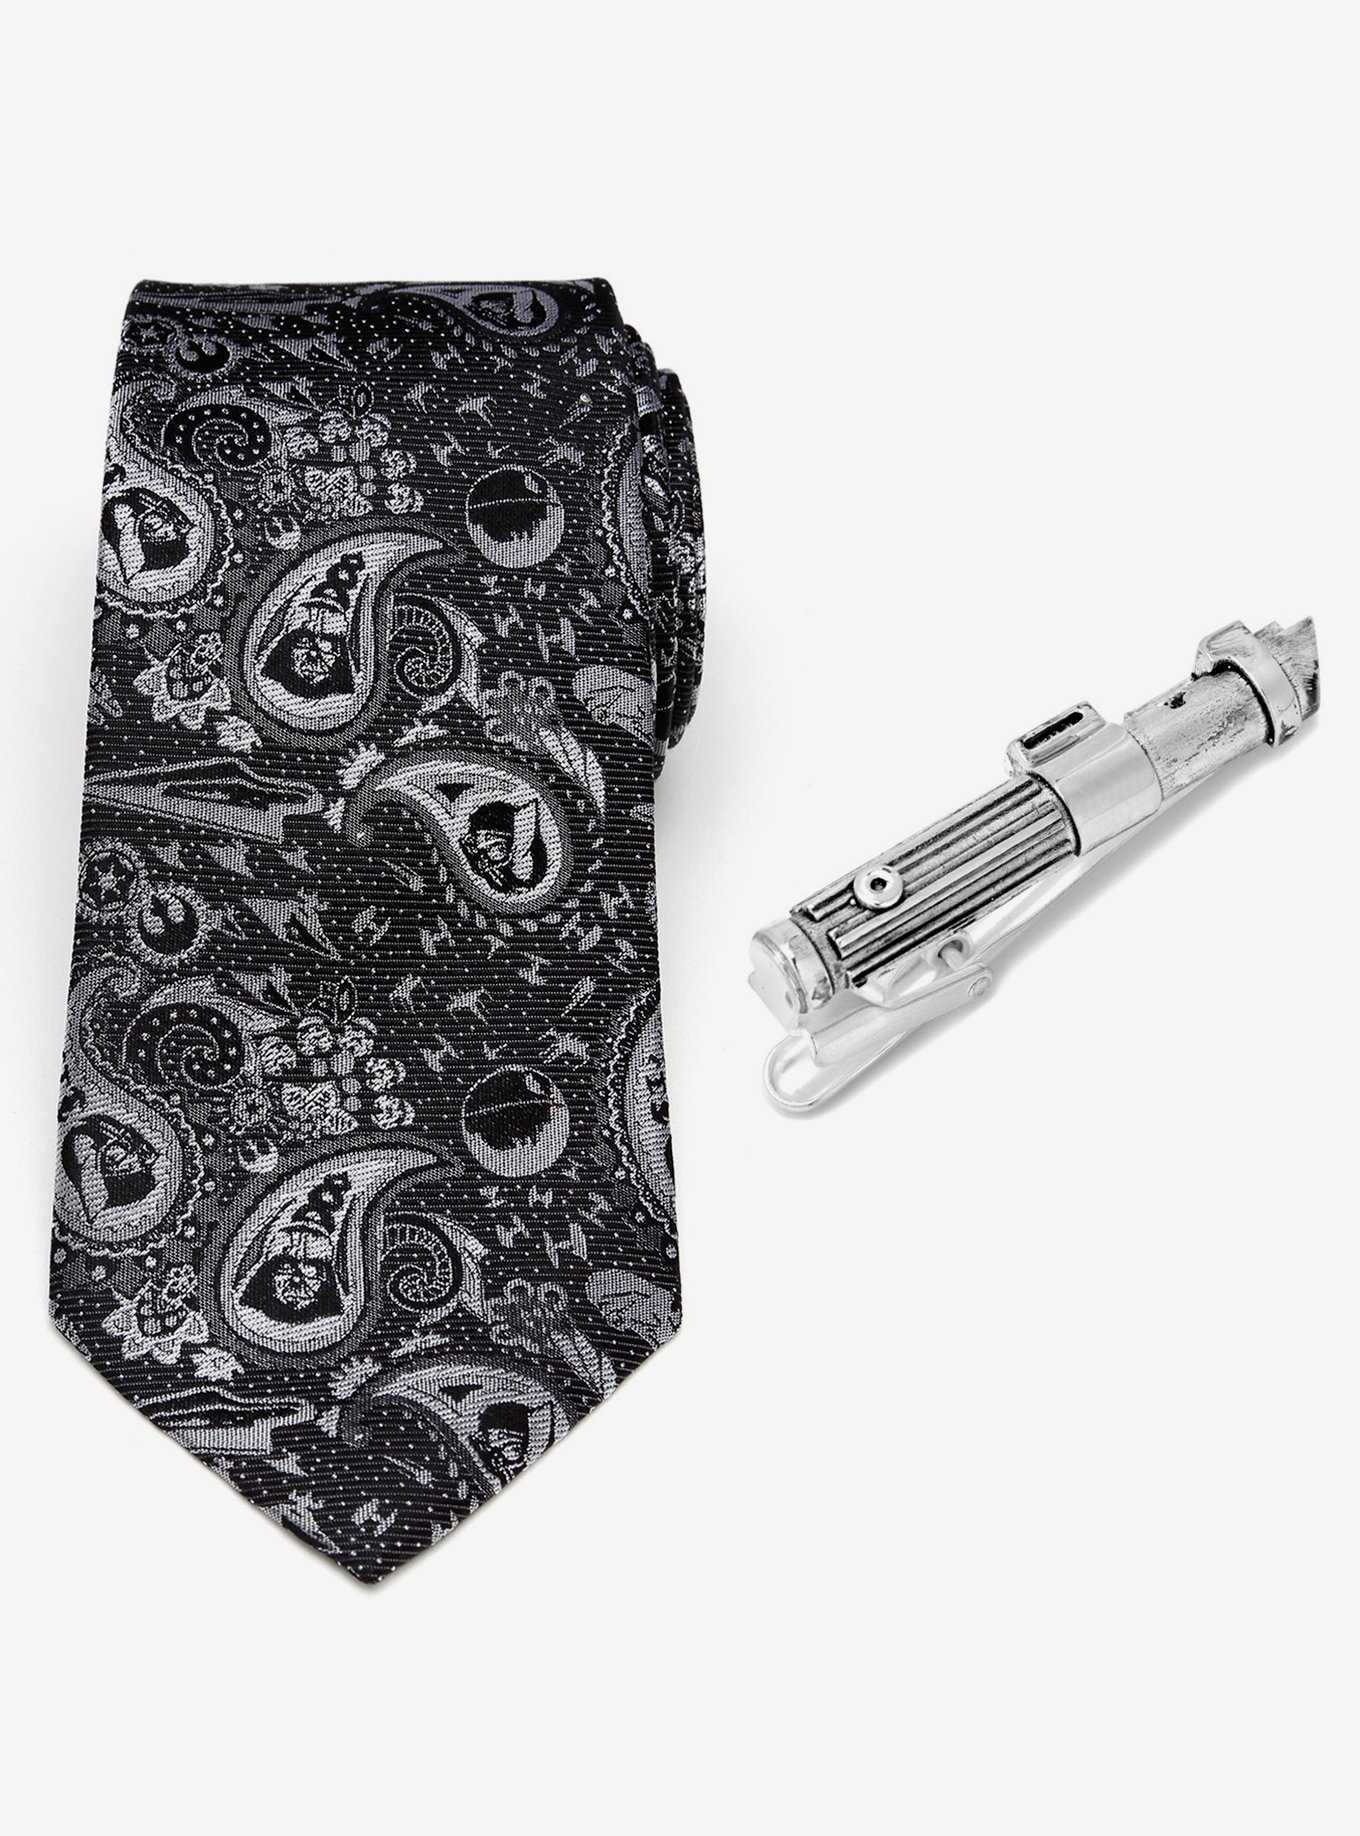 Star Wars Darth Vader Favorites Necktie and Tie Clip Set, , hi-res